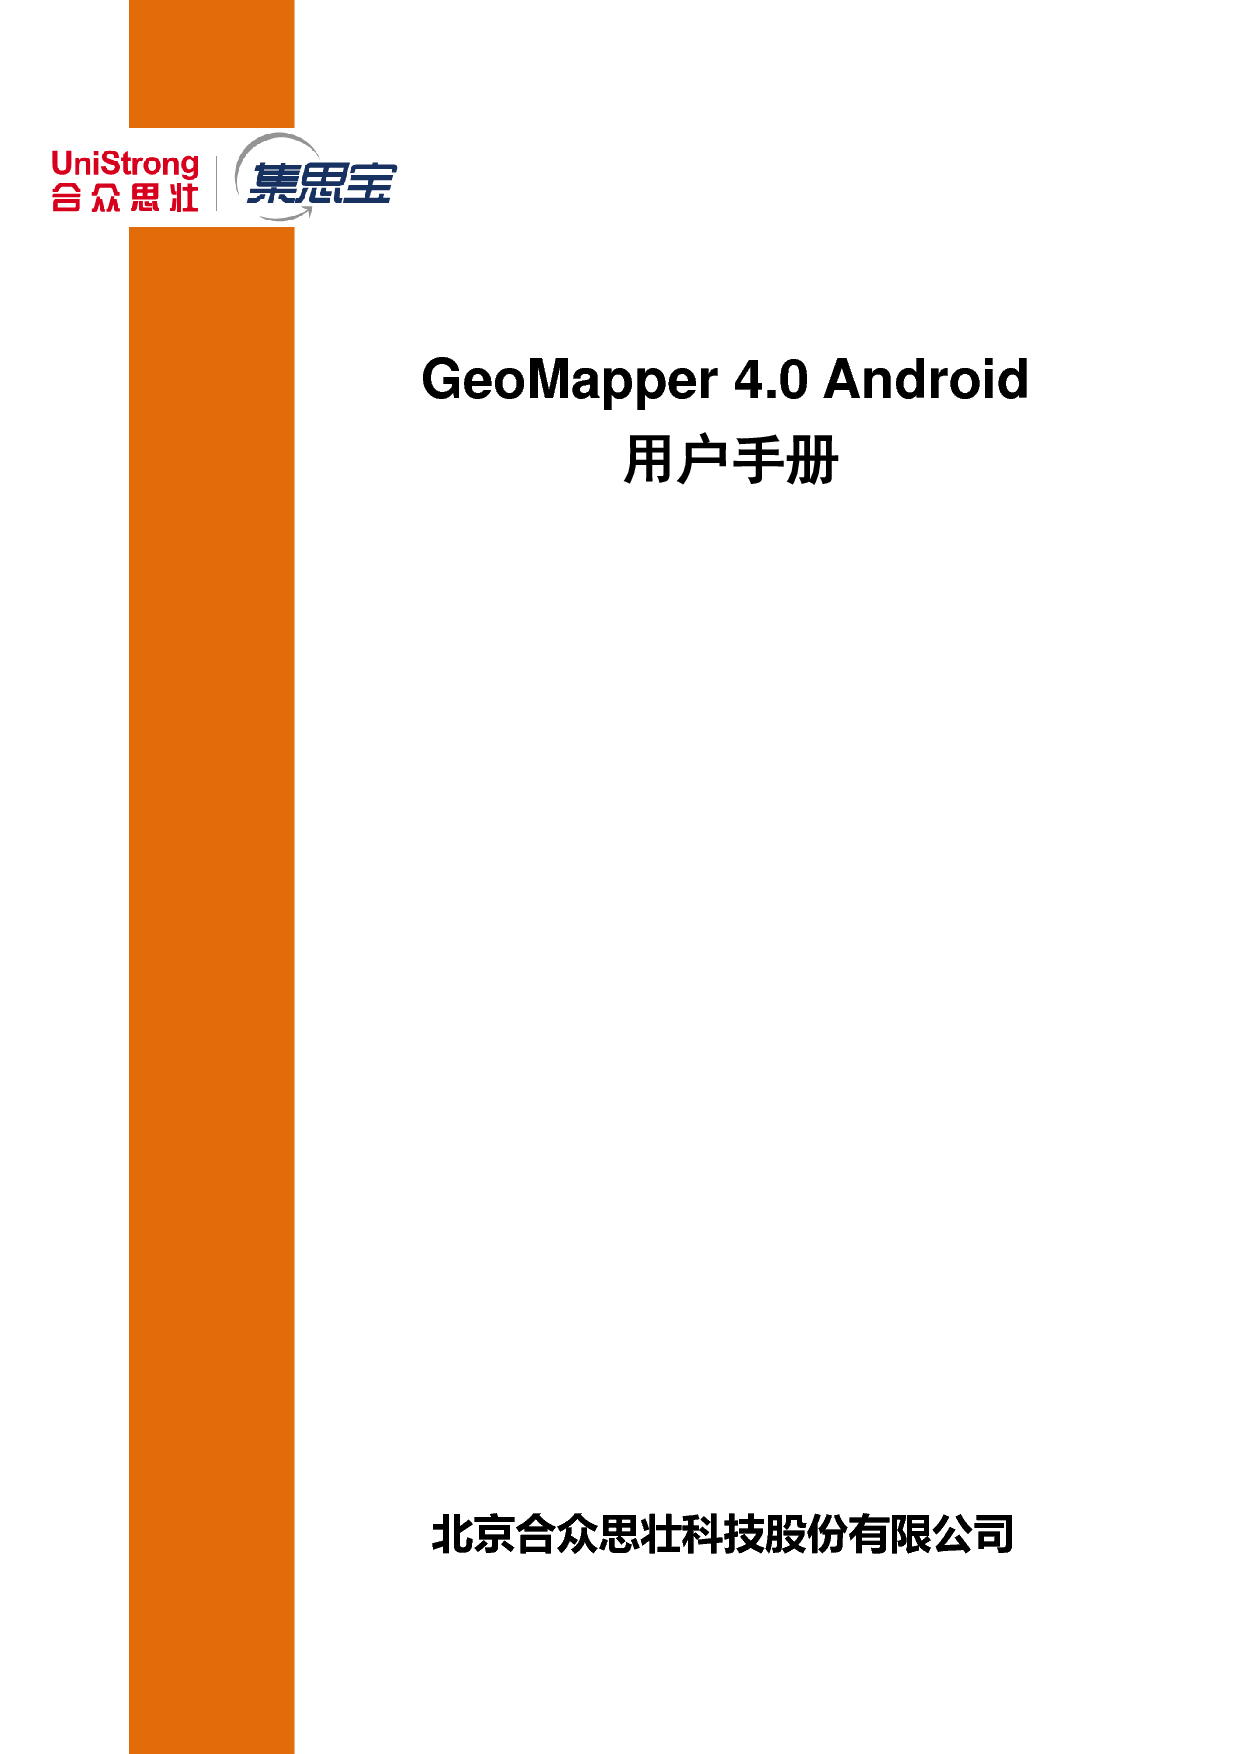 合众思壮 Unistrong GeoMapper 4.0 安卓 用户手册 封面